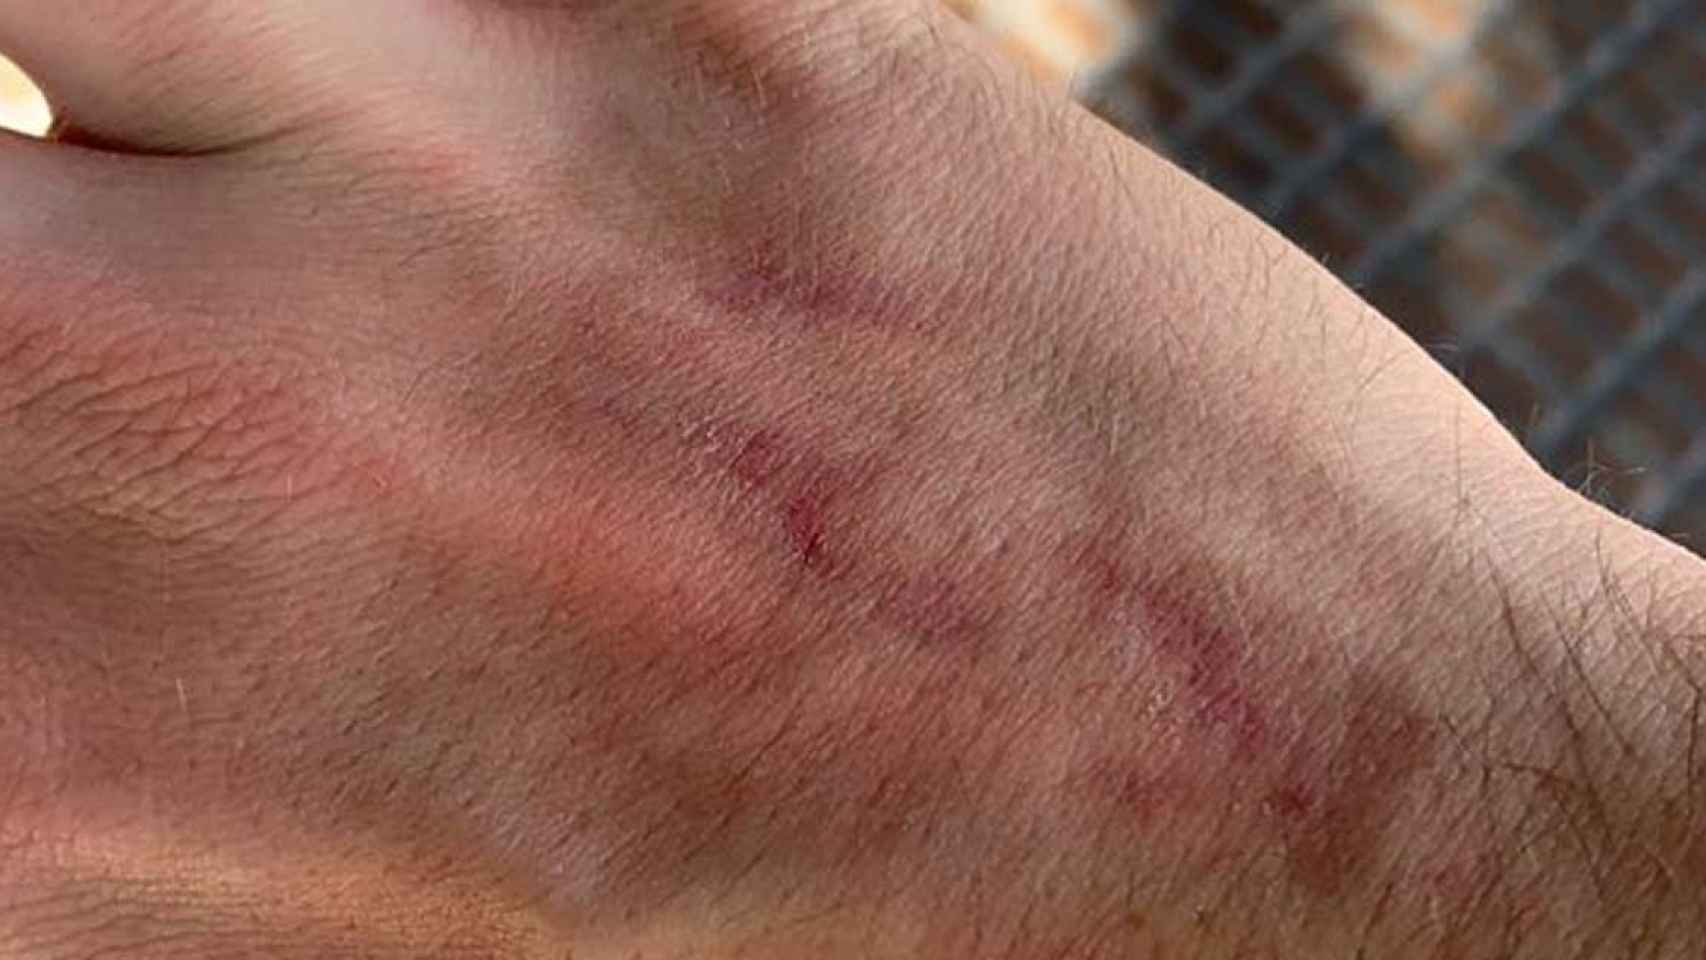 La víctima de la agresión homófoba, mostrando su herida en la mano tras recibir una patada / TWITTER